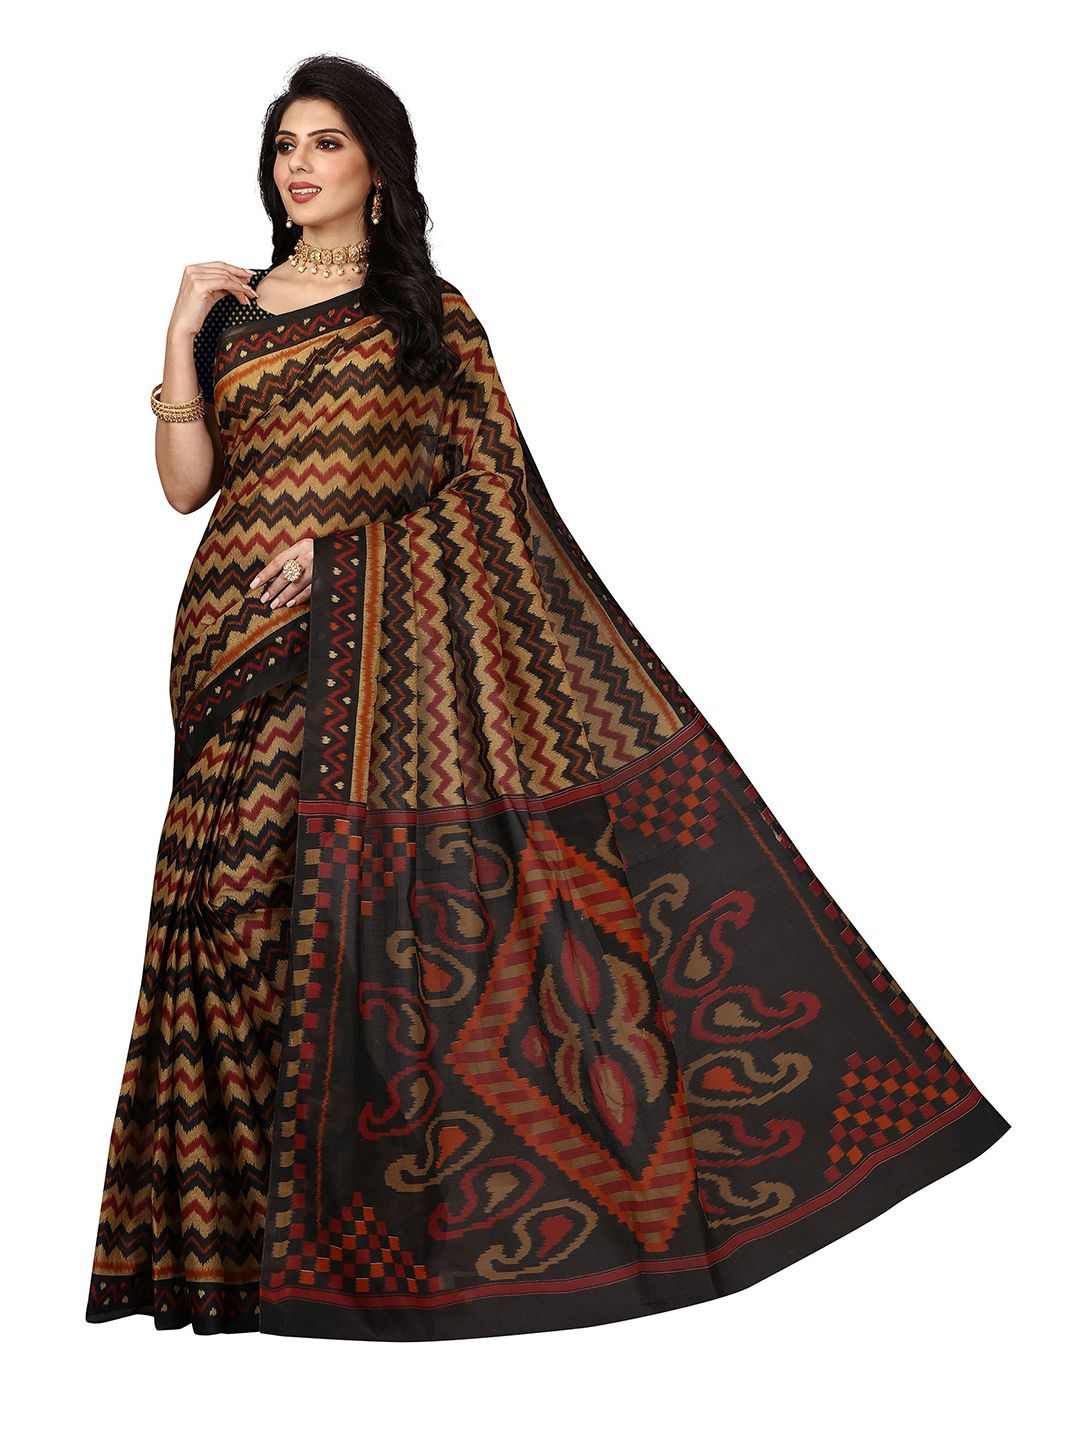 SHANVIKA Brown & Black Striped Pure Cotton Block Print Saree Price in India